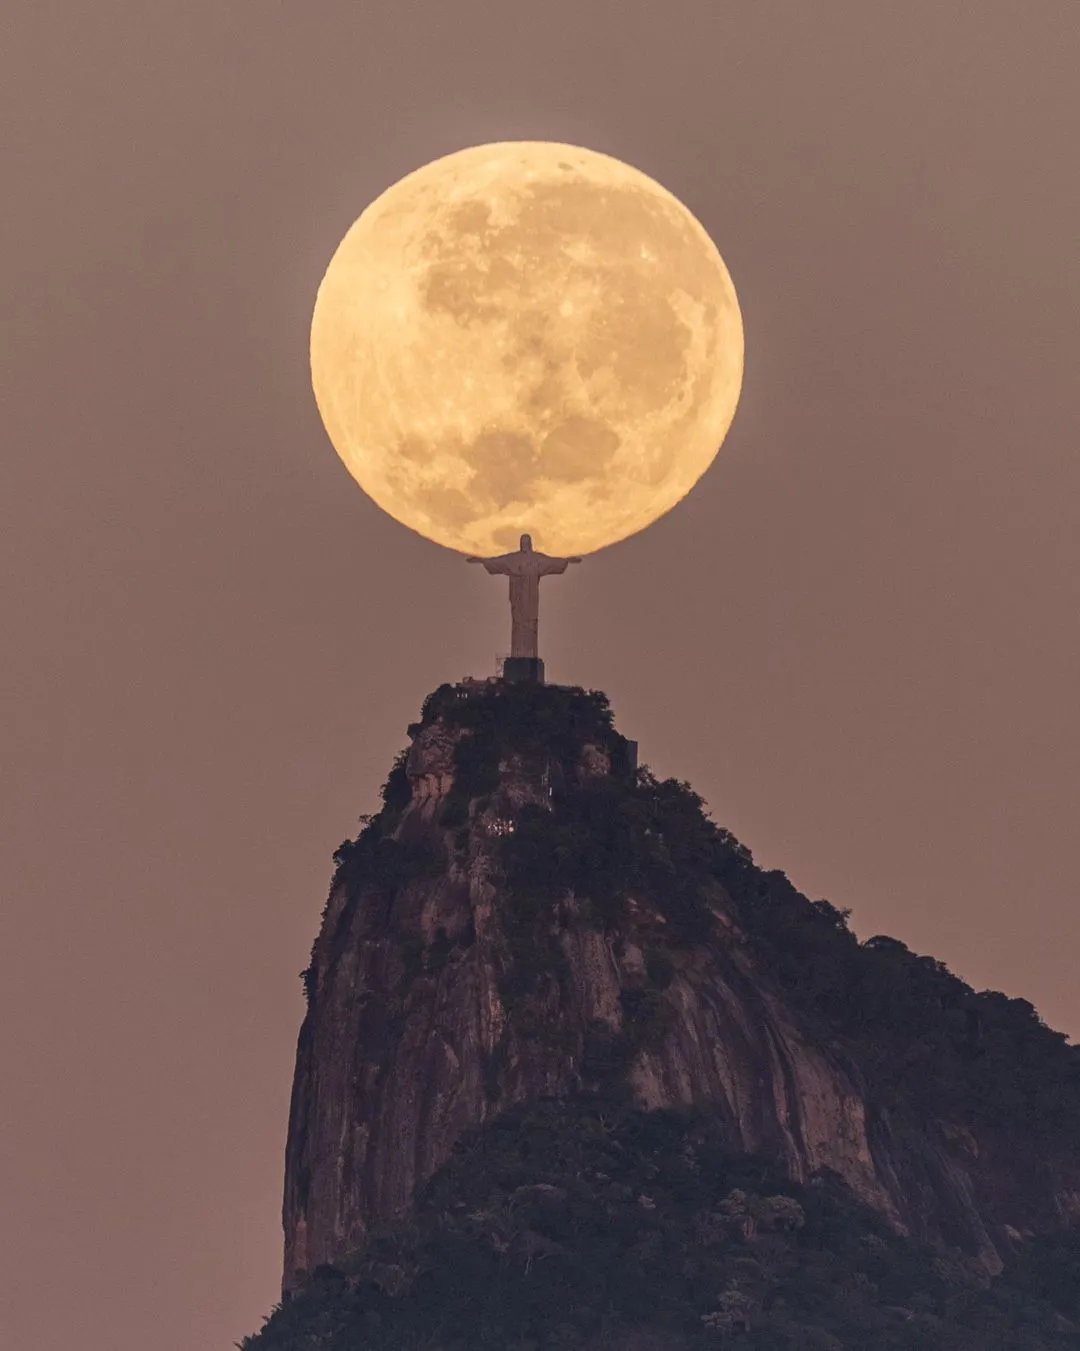 Imagem do Cristo 'segurando' a Lua ganha as redes sociais | Enfoco - O seu site de notícias